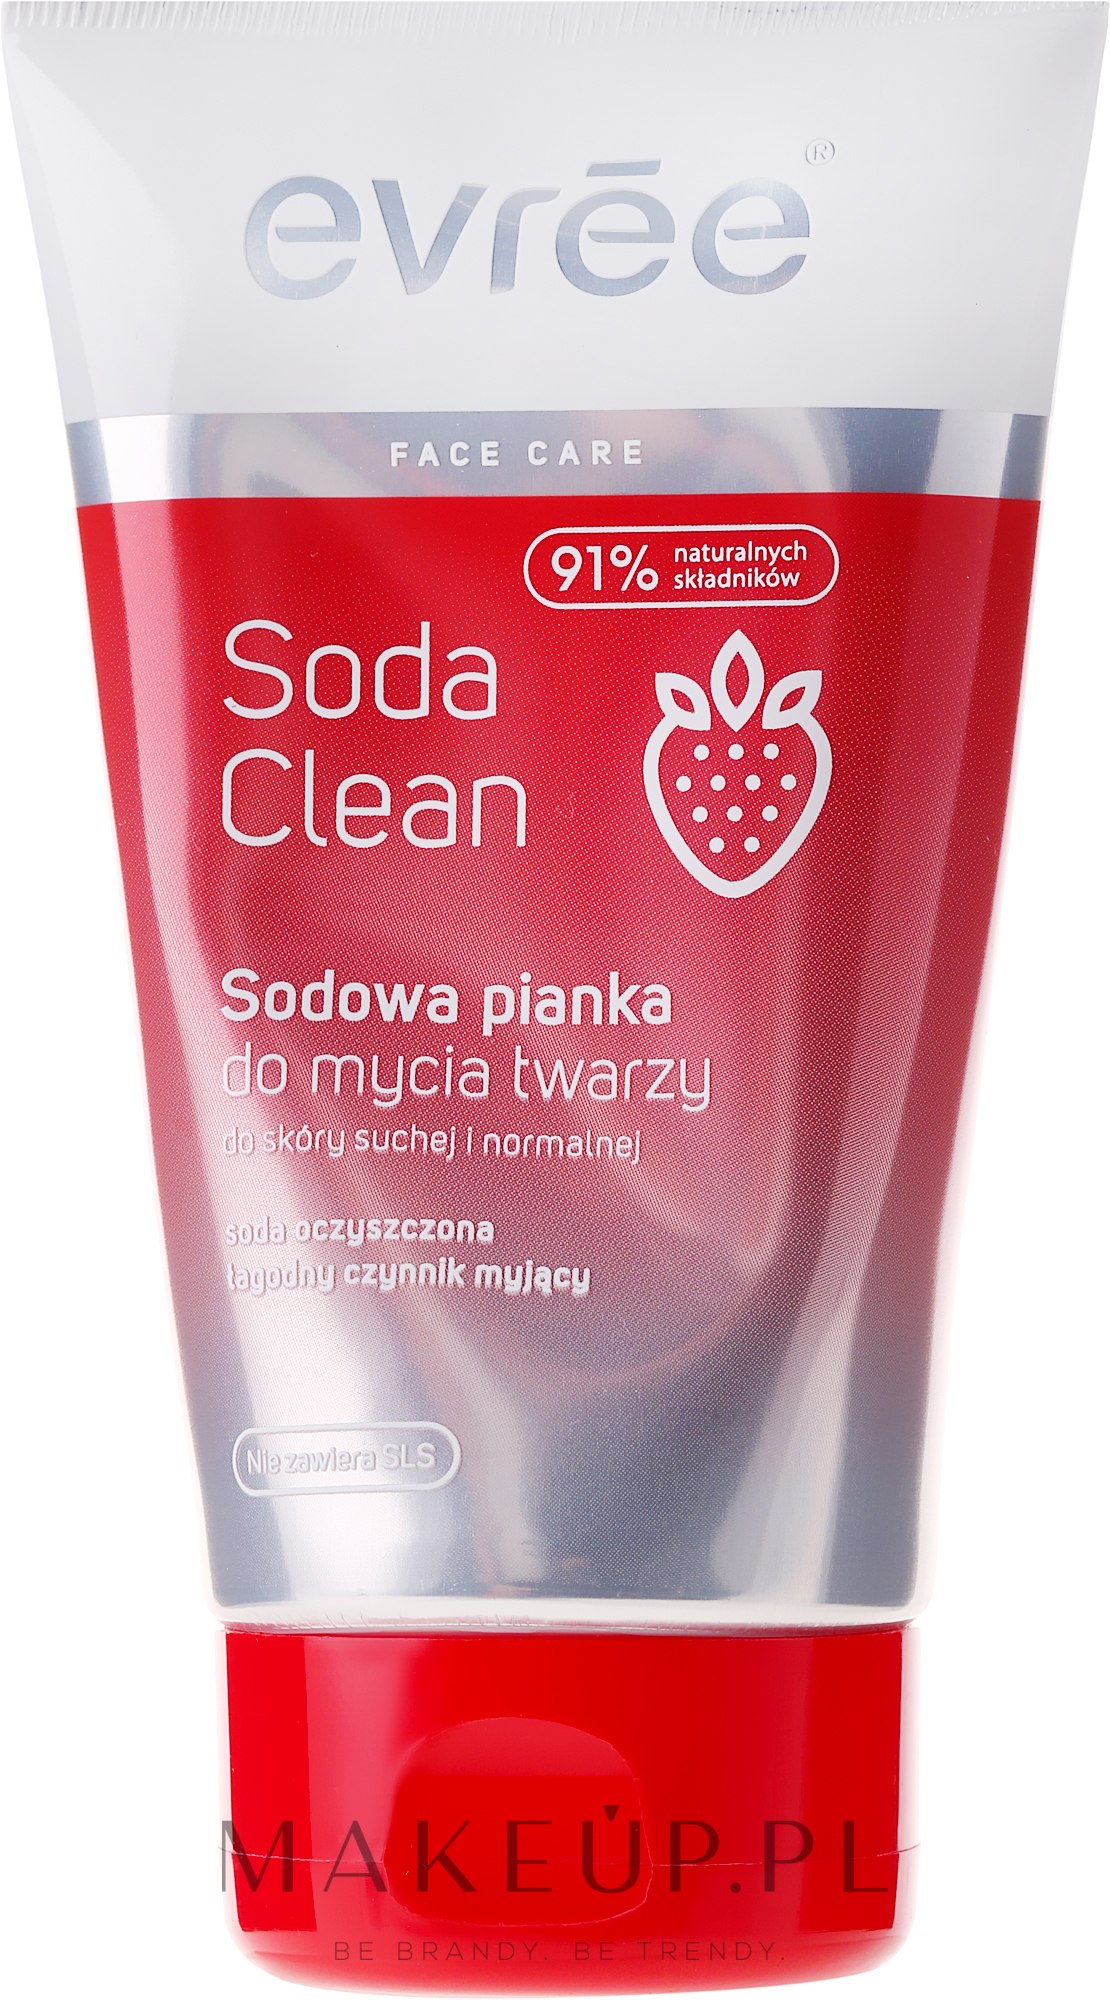 soda clean sodowa pianka do mycia twarzy